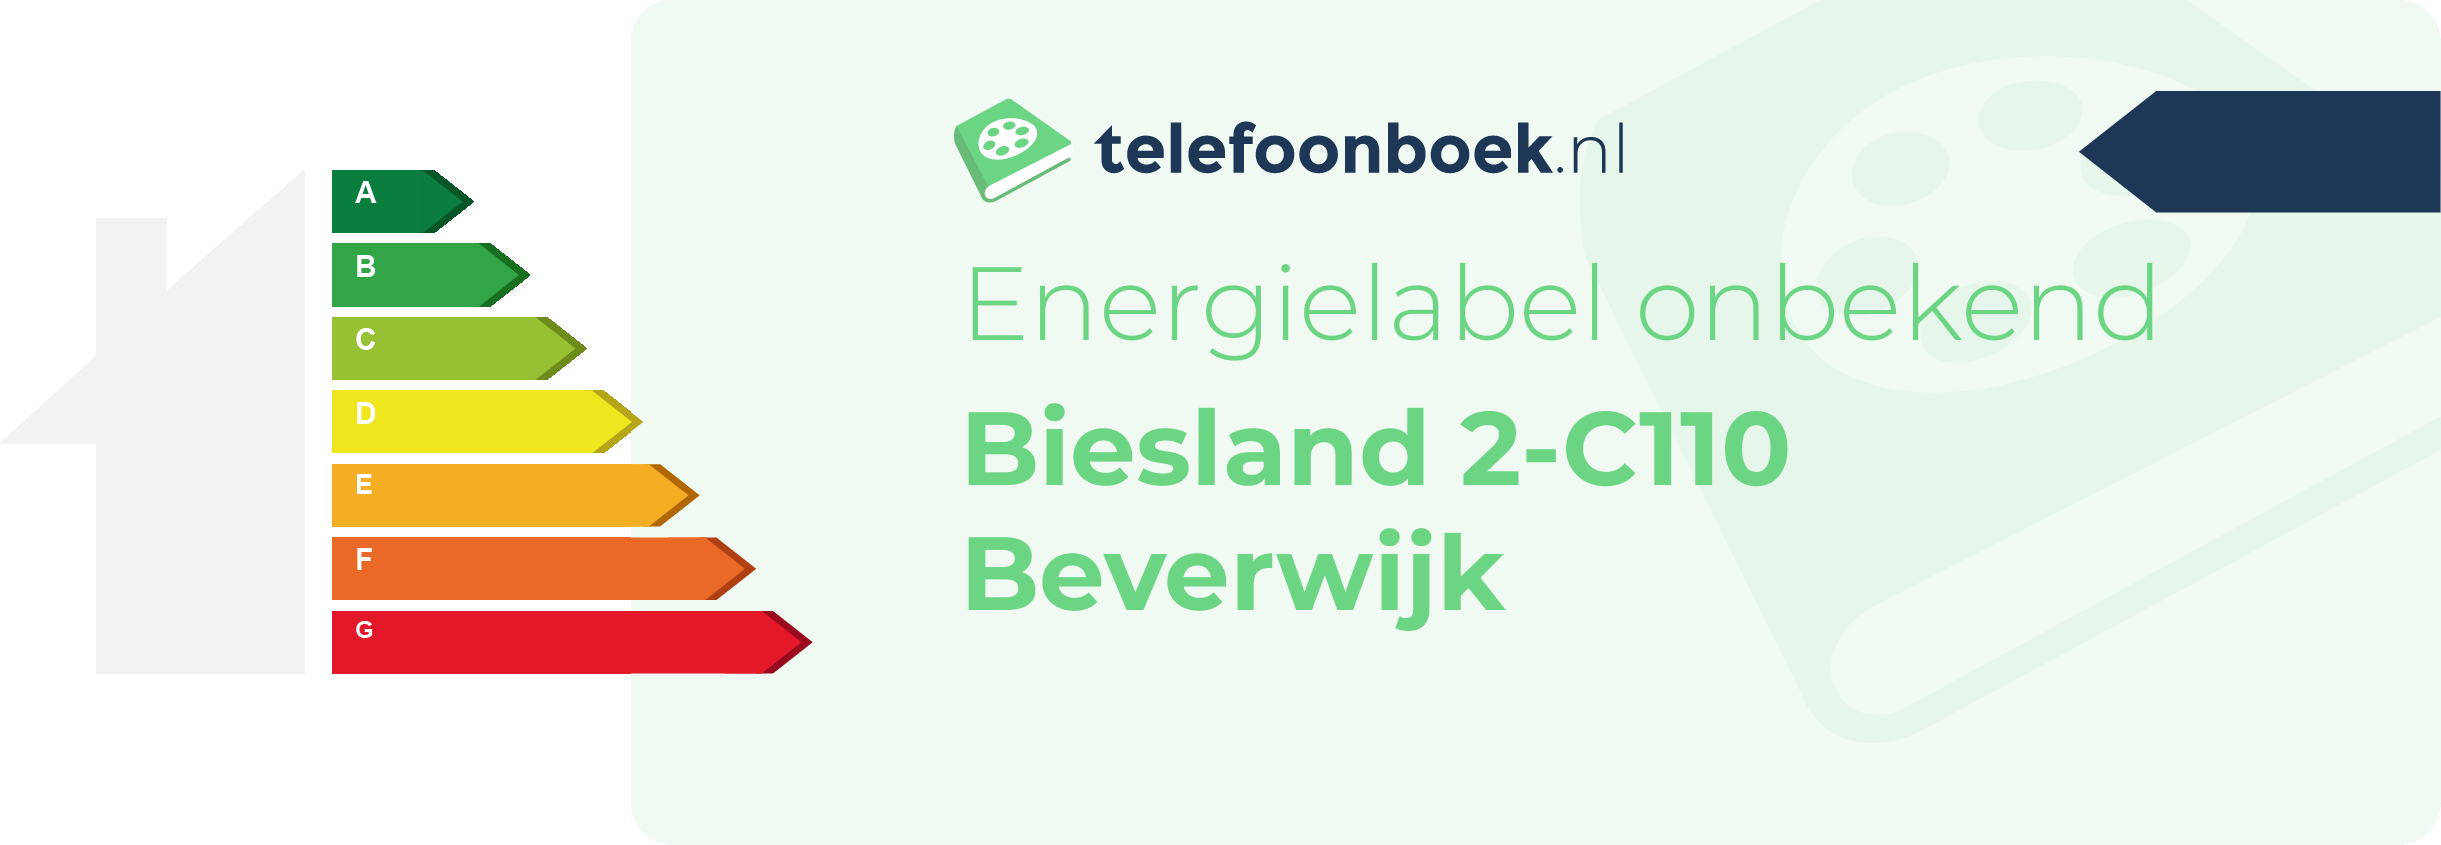 Energielabel Biesland 2-C110 Beverwijk